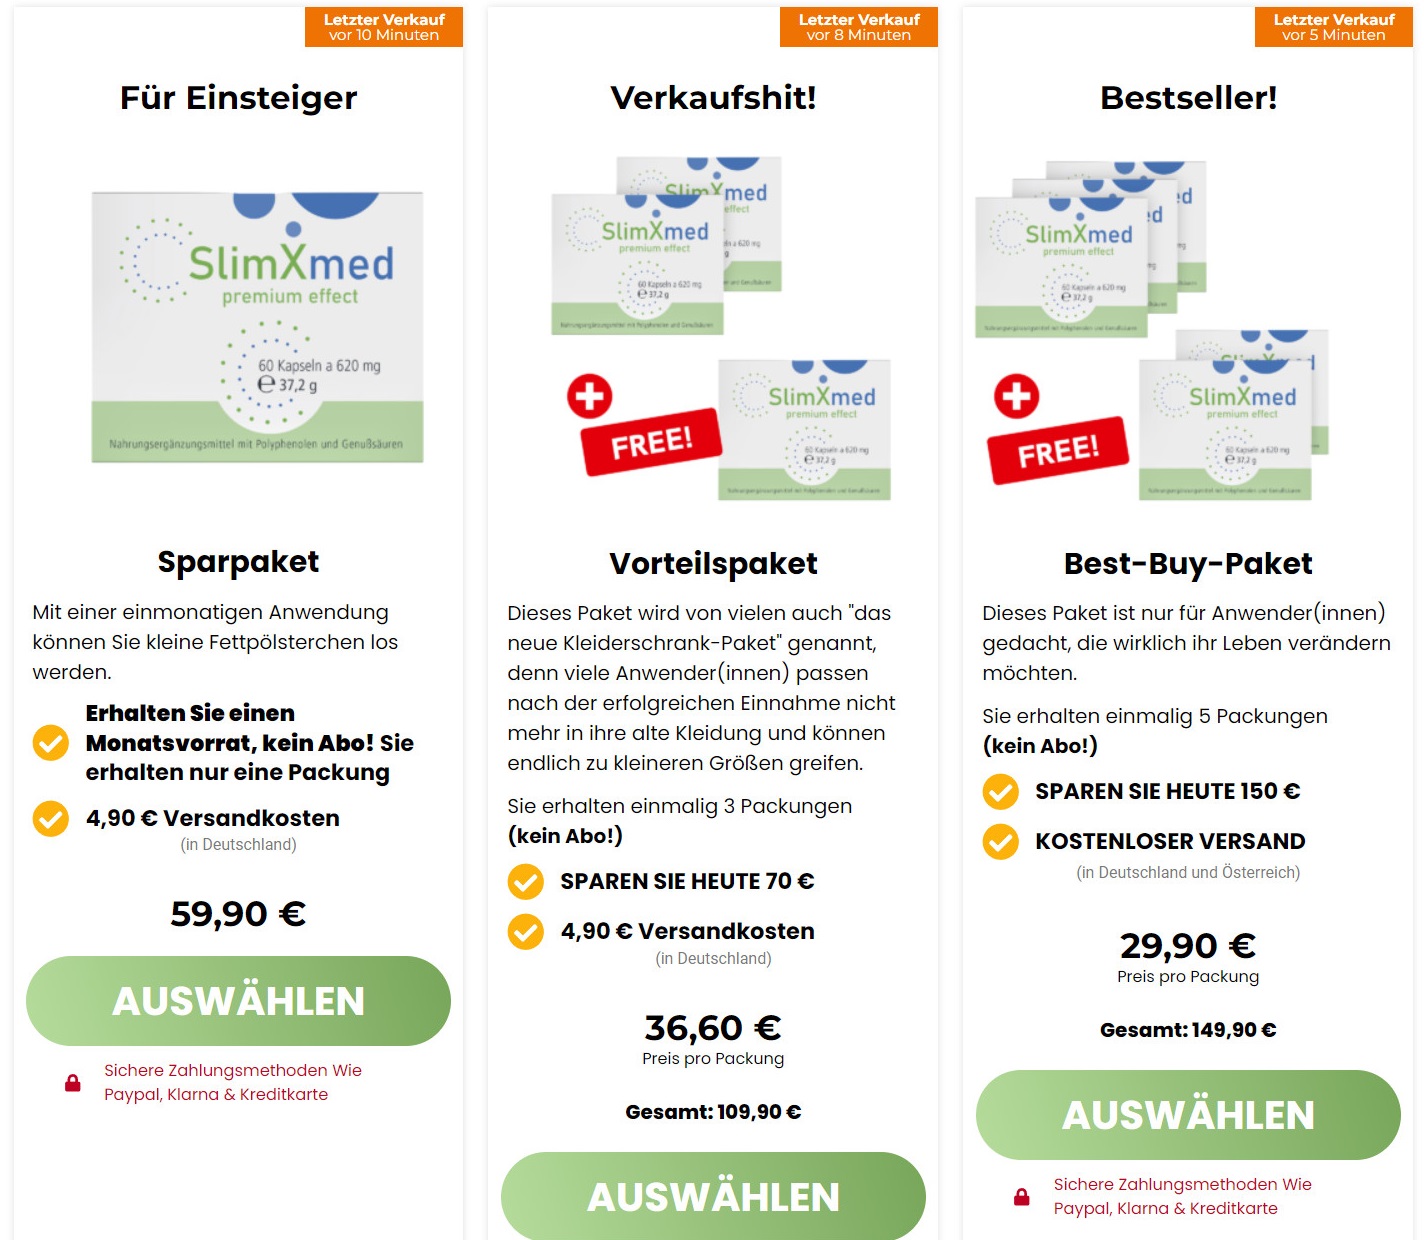 SlimXmed Premium Effect - Stiftung Warentest, Erfahrungen, Test, Preis und Kaufen!